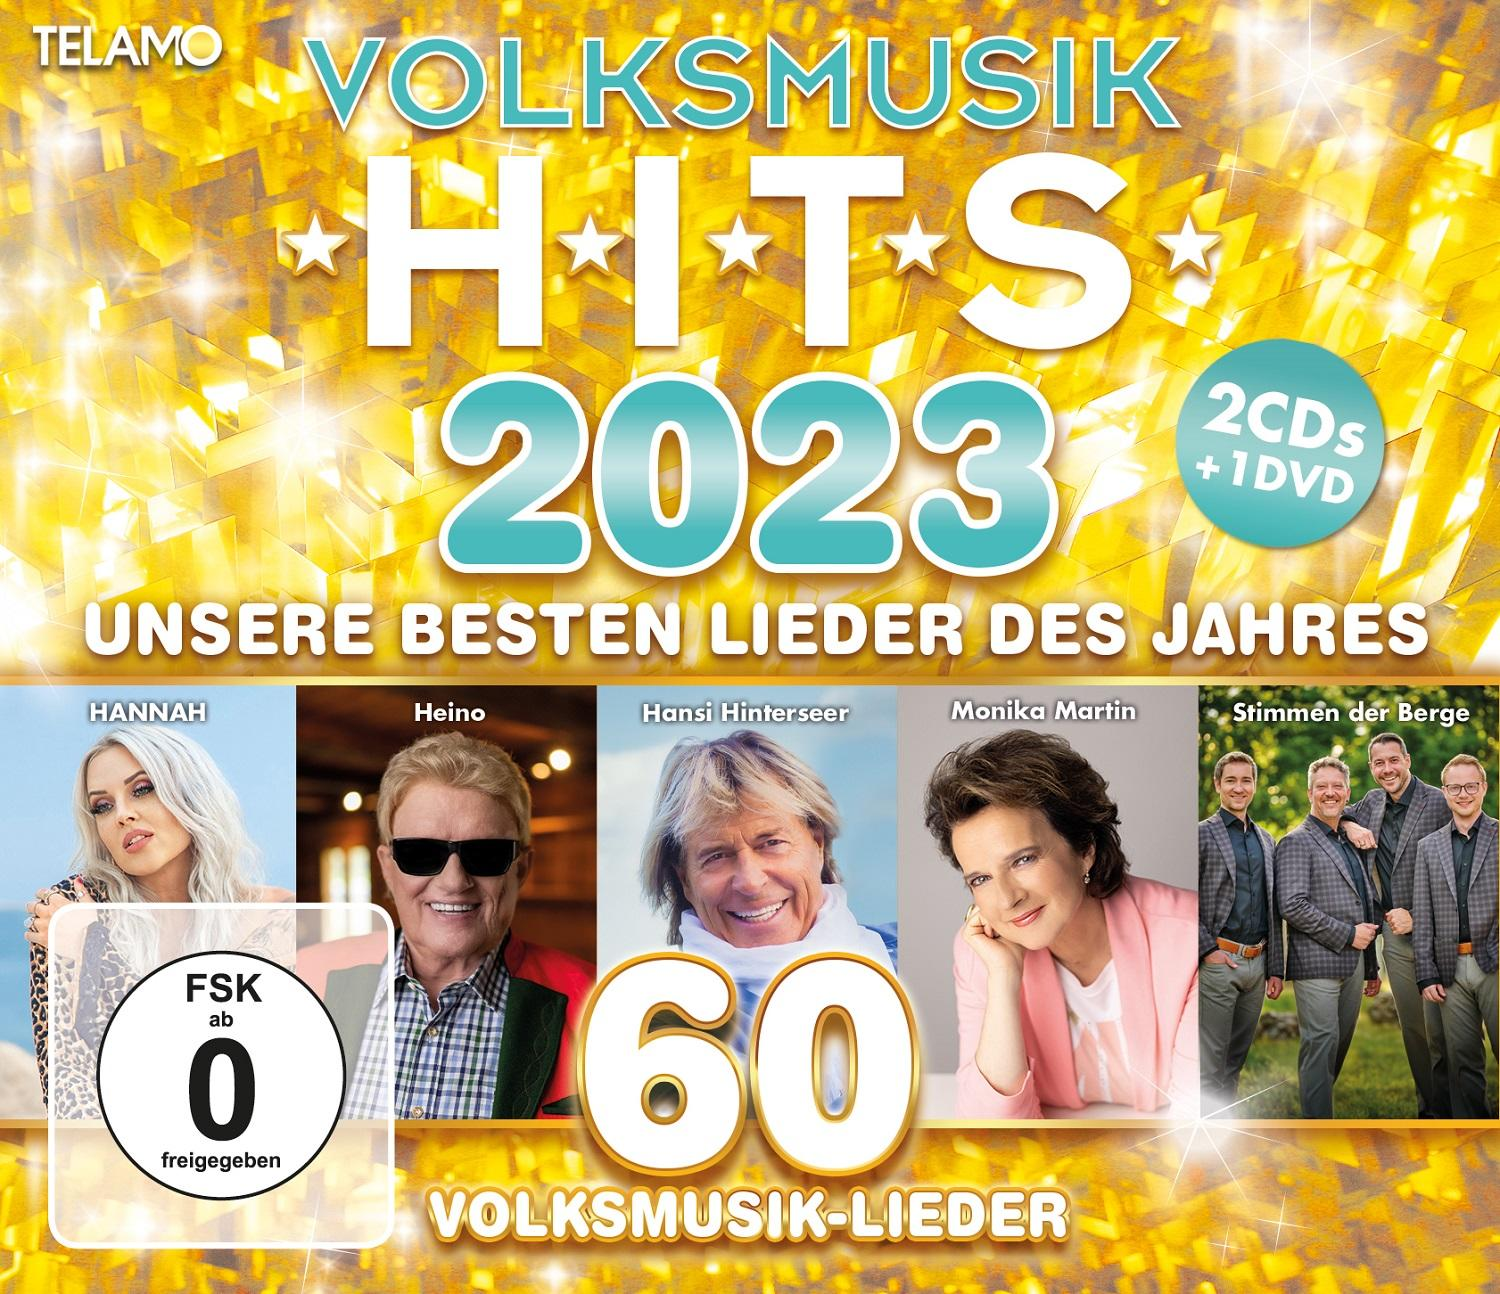 Volksmusik + - Hits - DVD Video) 2023 (CD VARIOUS